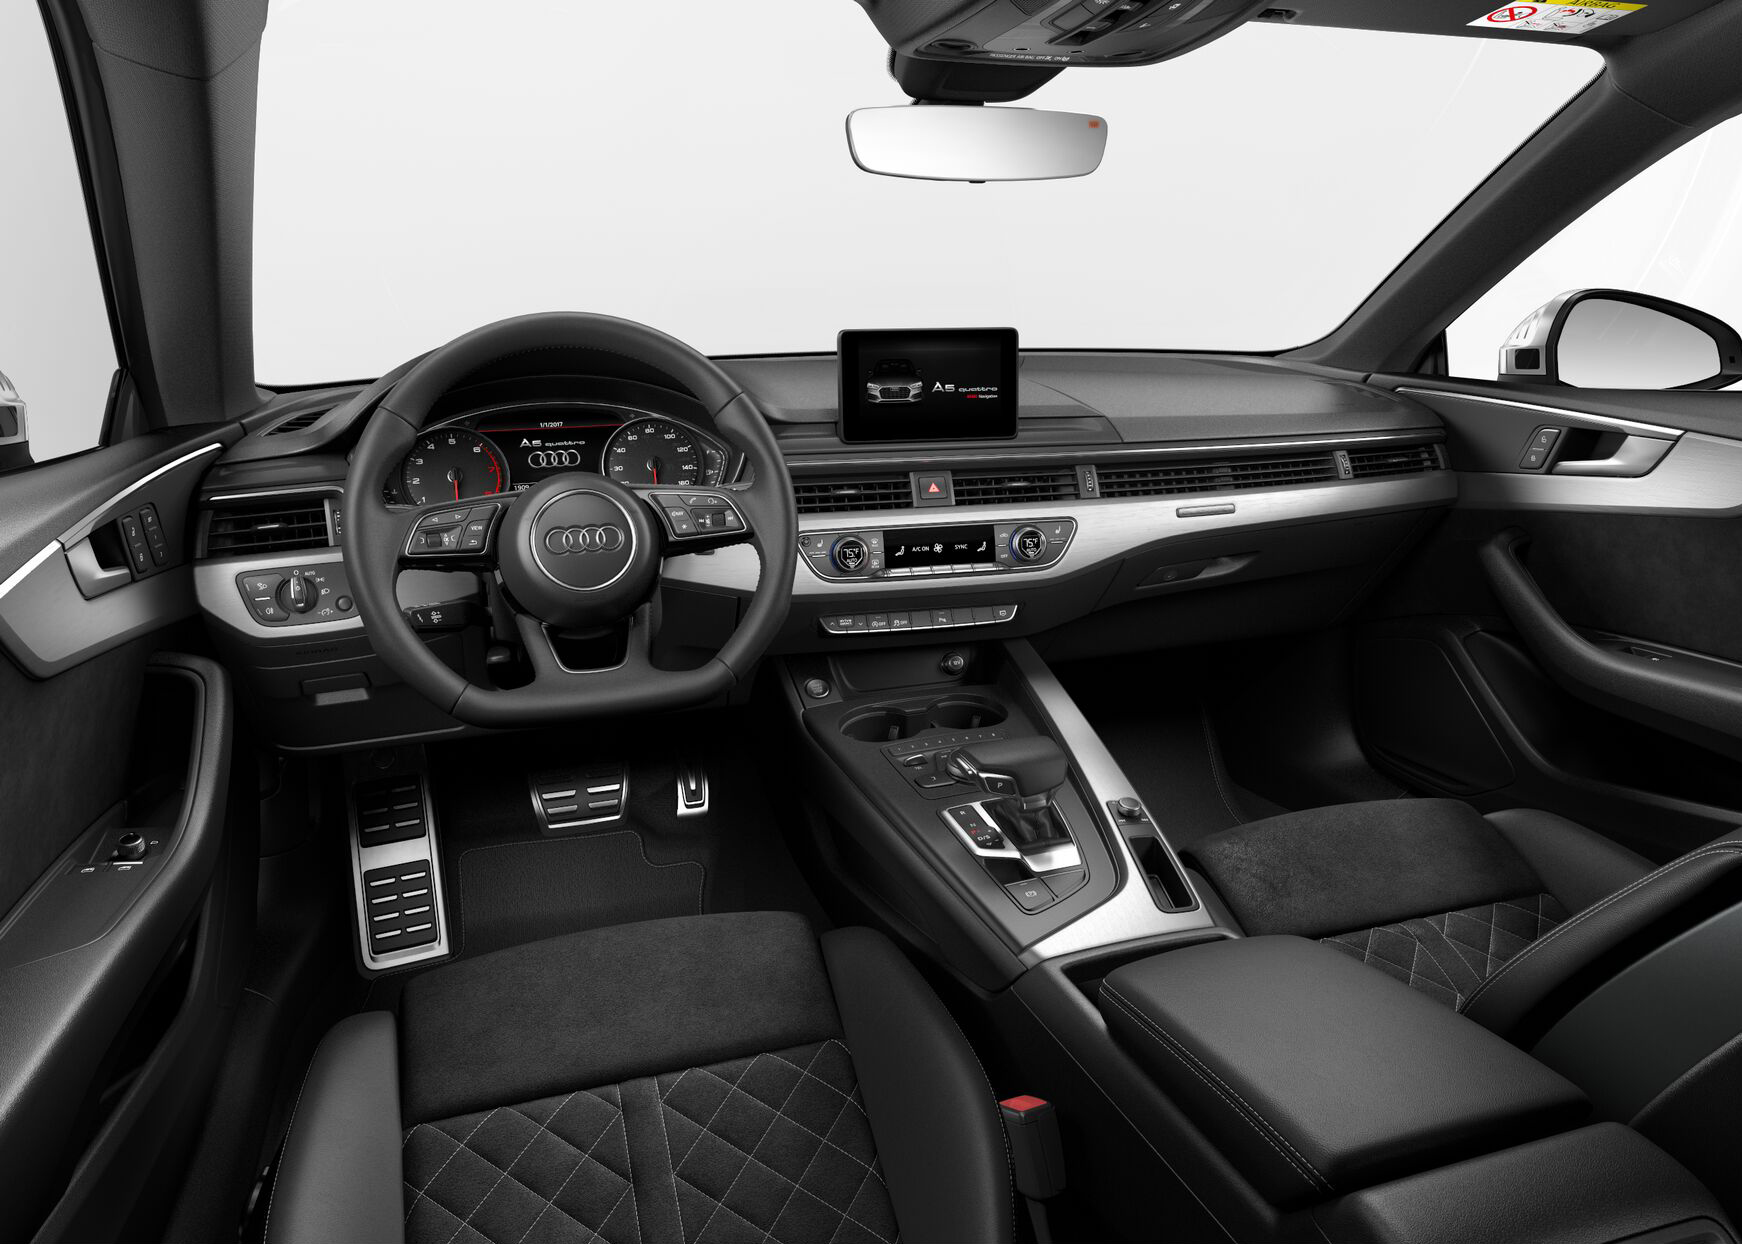 Audi S5 Prestige interior front view